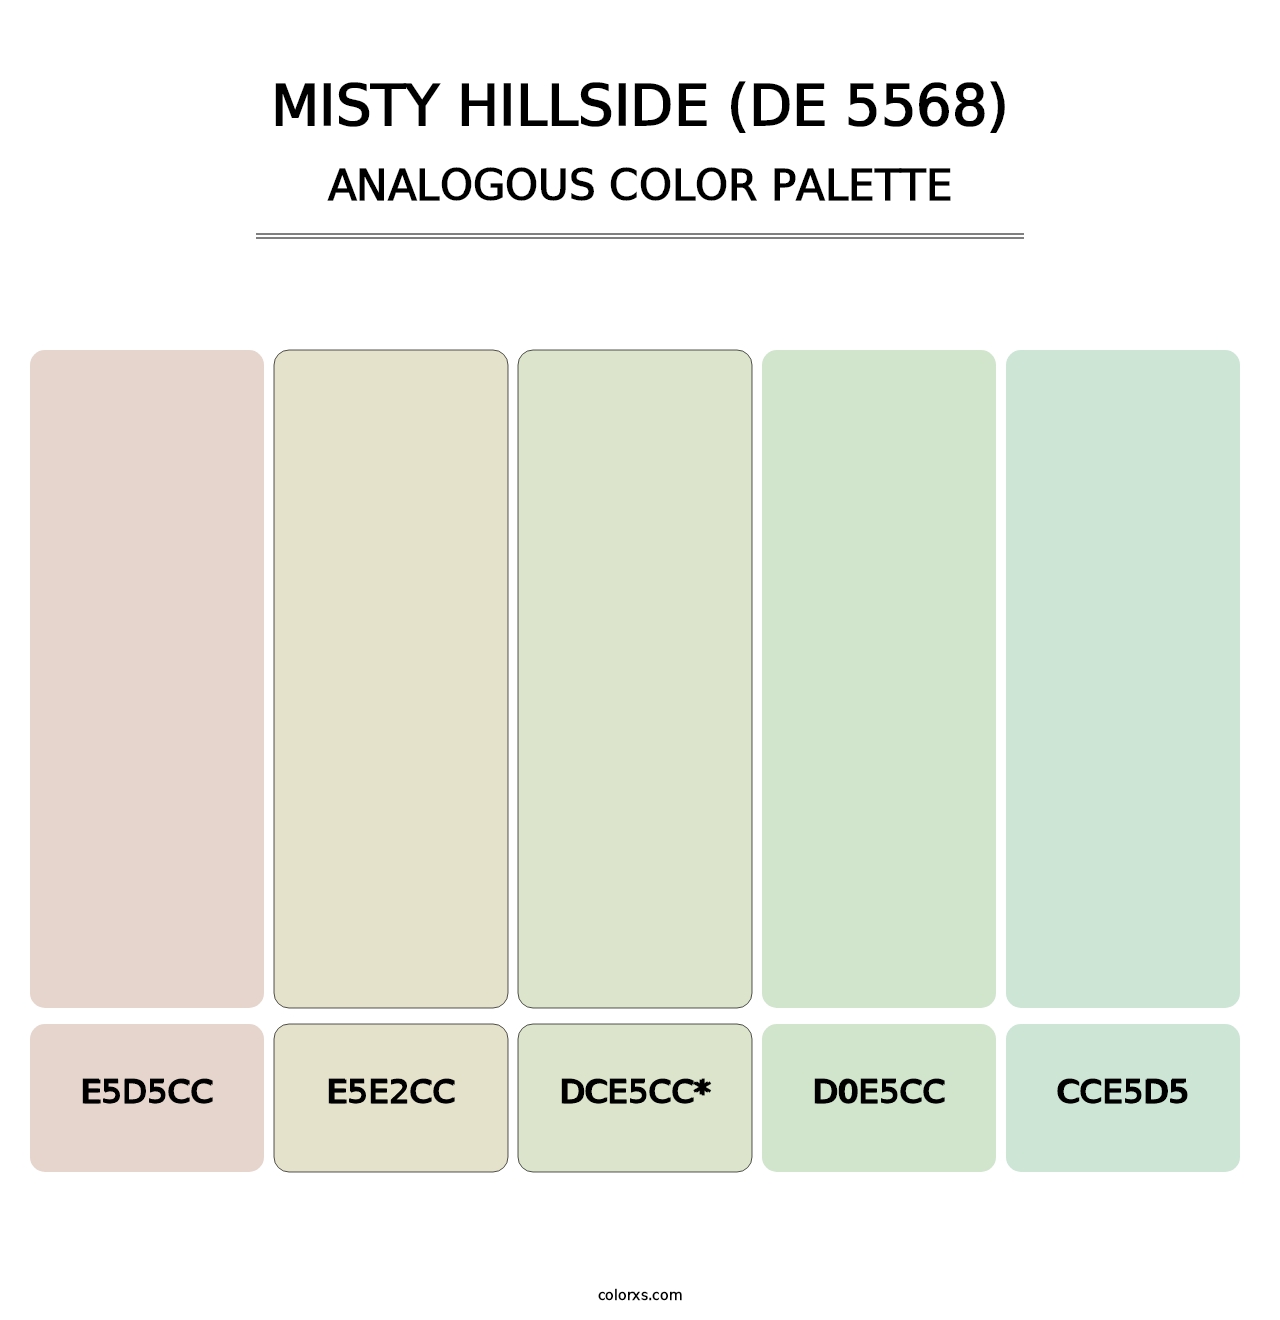 Misty Hillside (DE 5568) - Analogous Color Palette